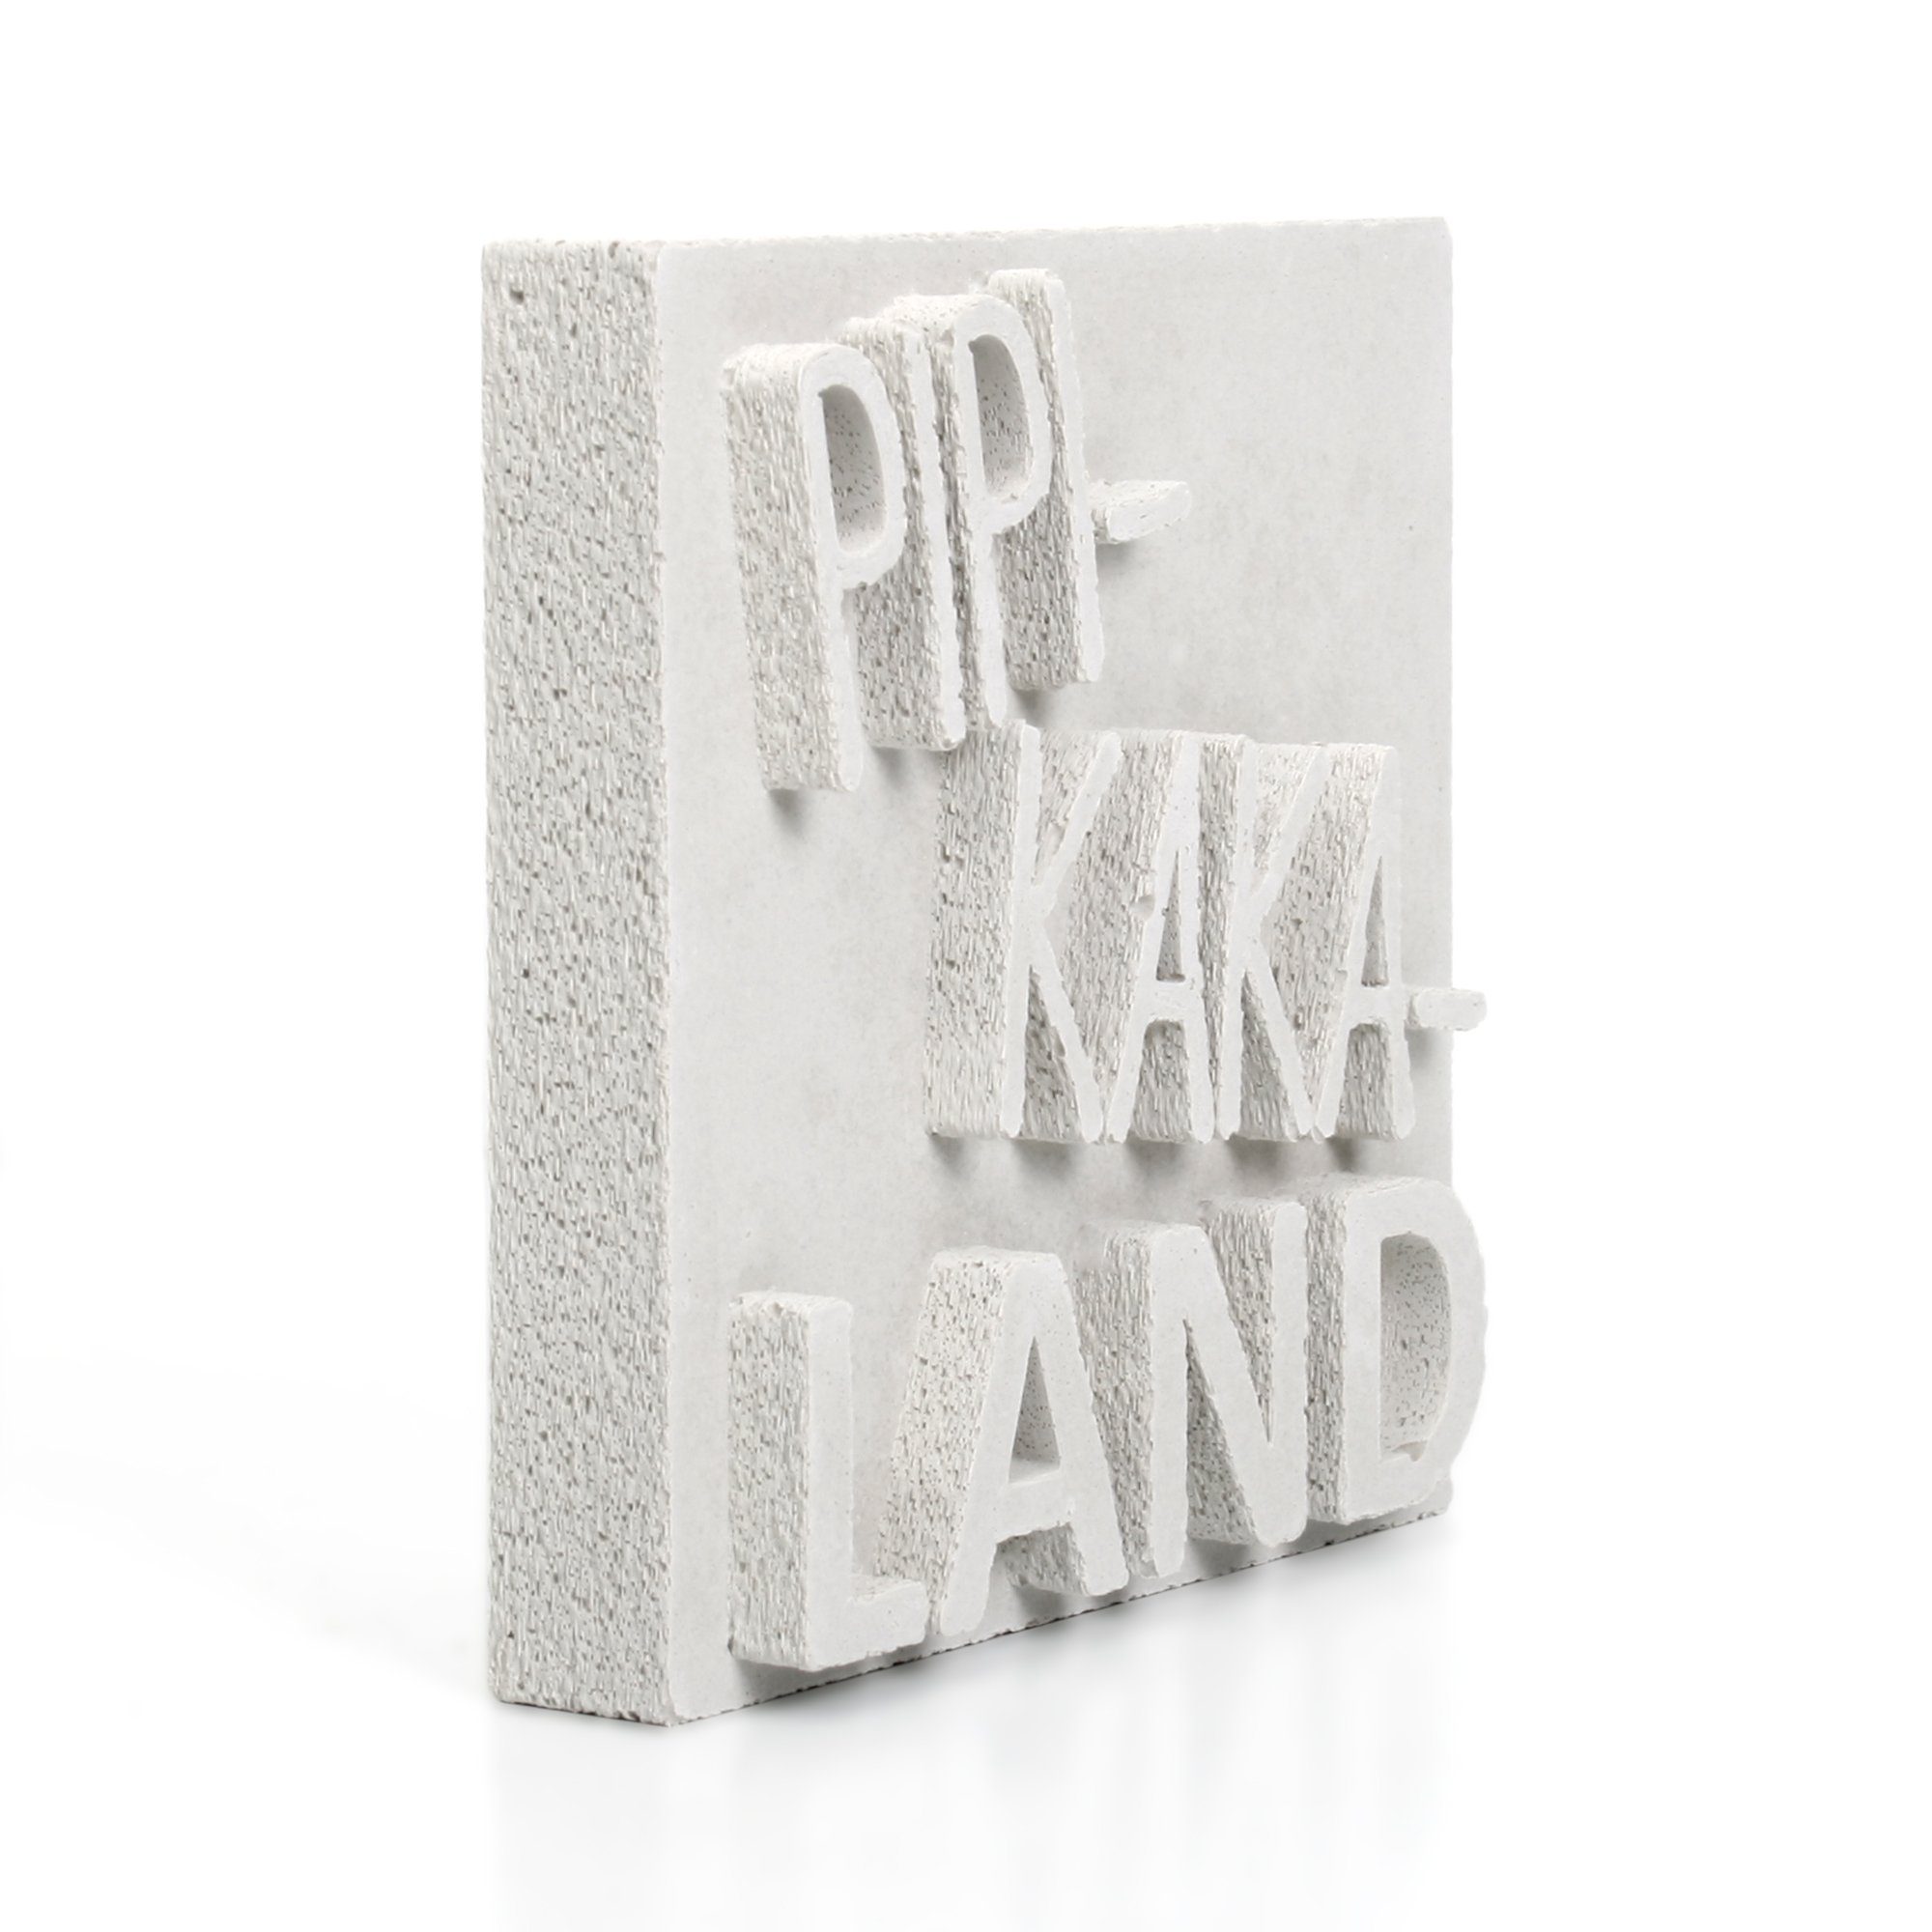 Einzelstück Unikat AUFSTELLER Dekorativer Beton, ein Deko-Schriftzug handgegossen Weiß „PIPI-KAKA-LAND“ aus Kreative jedes Feder